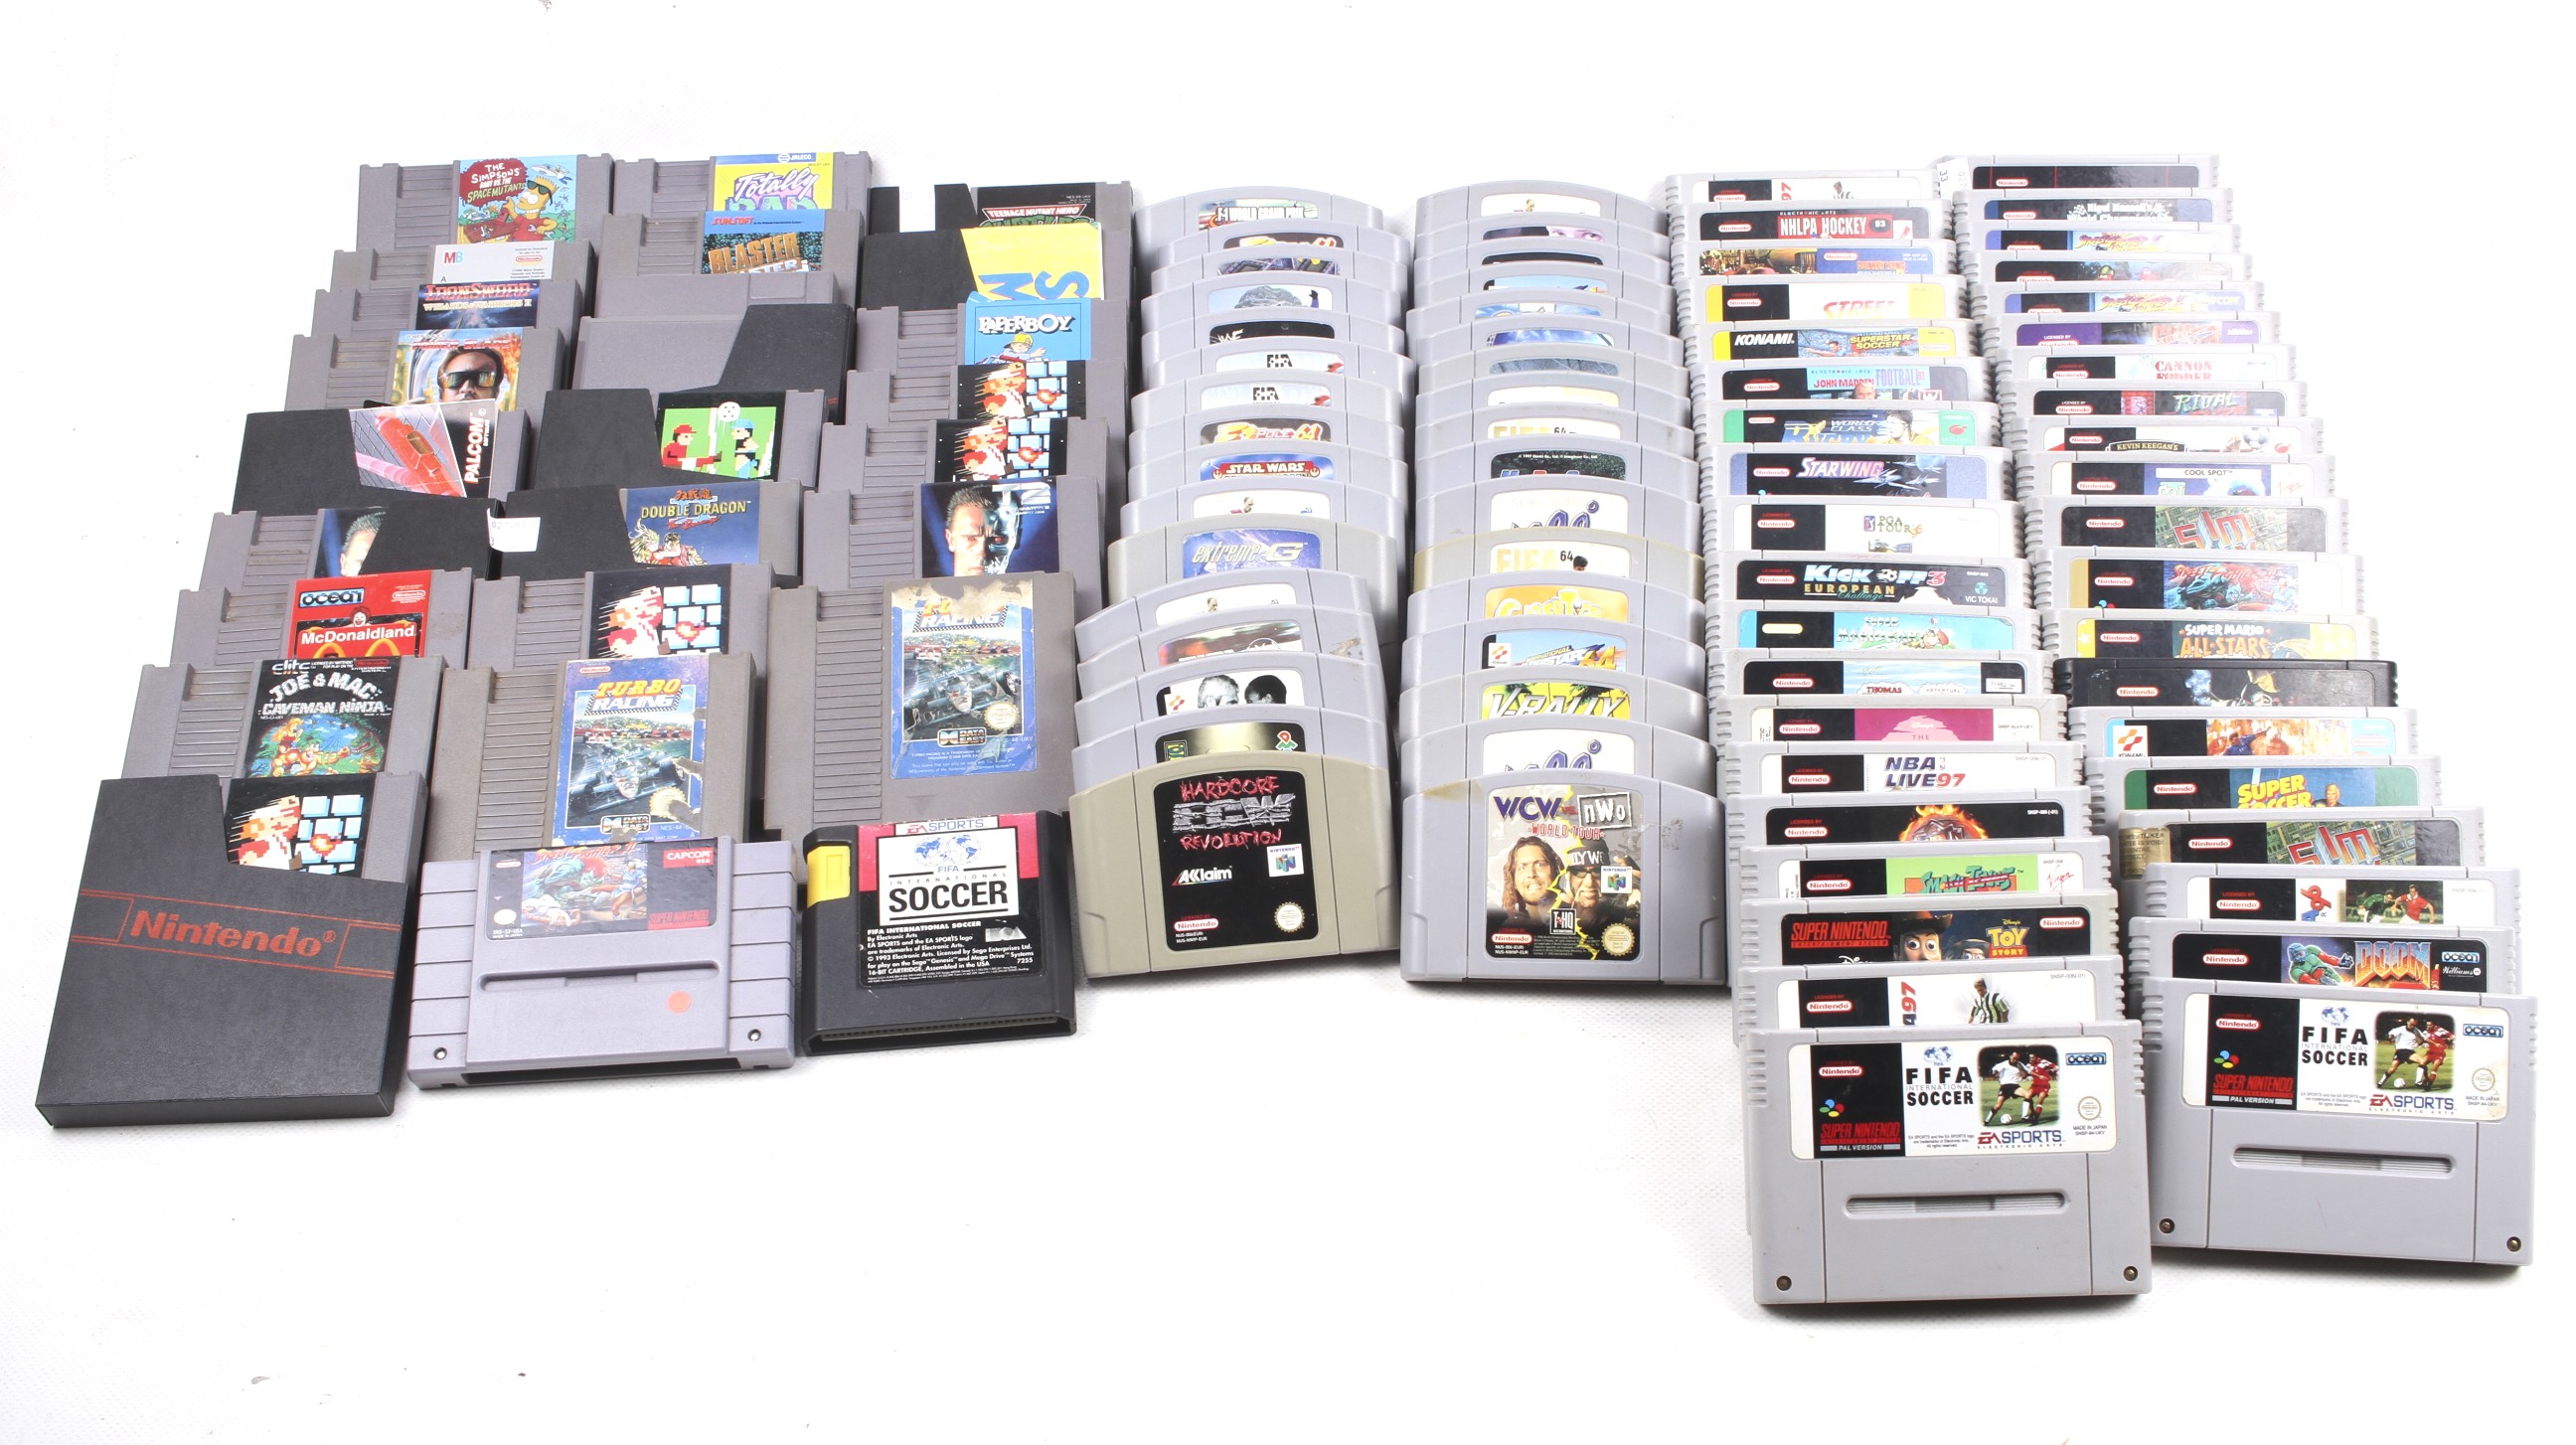 A collection of retro Nintendo video games.